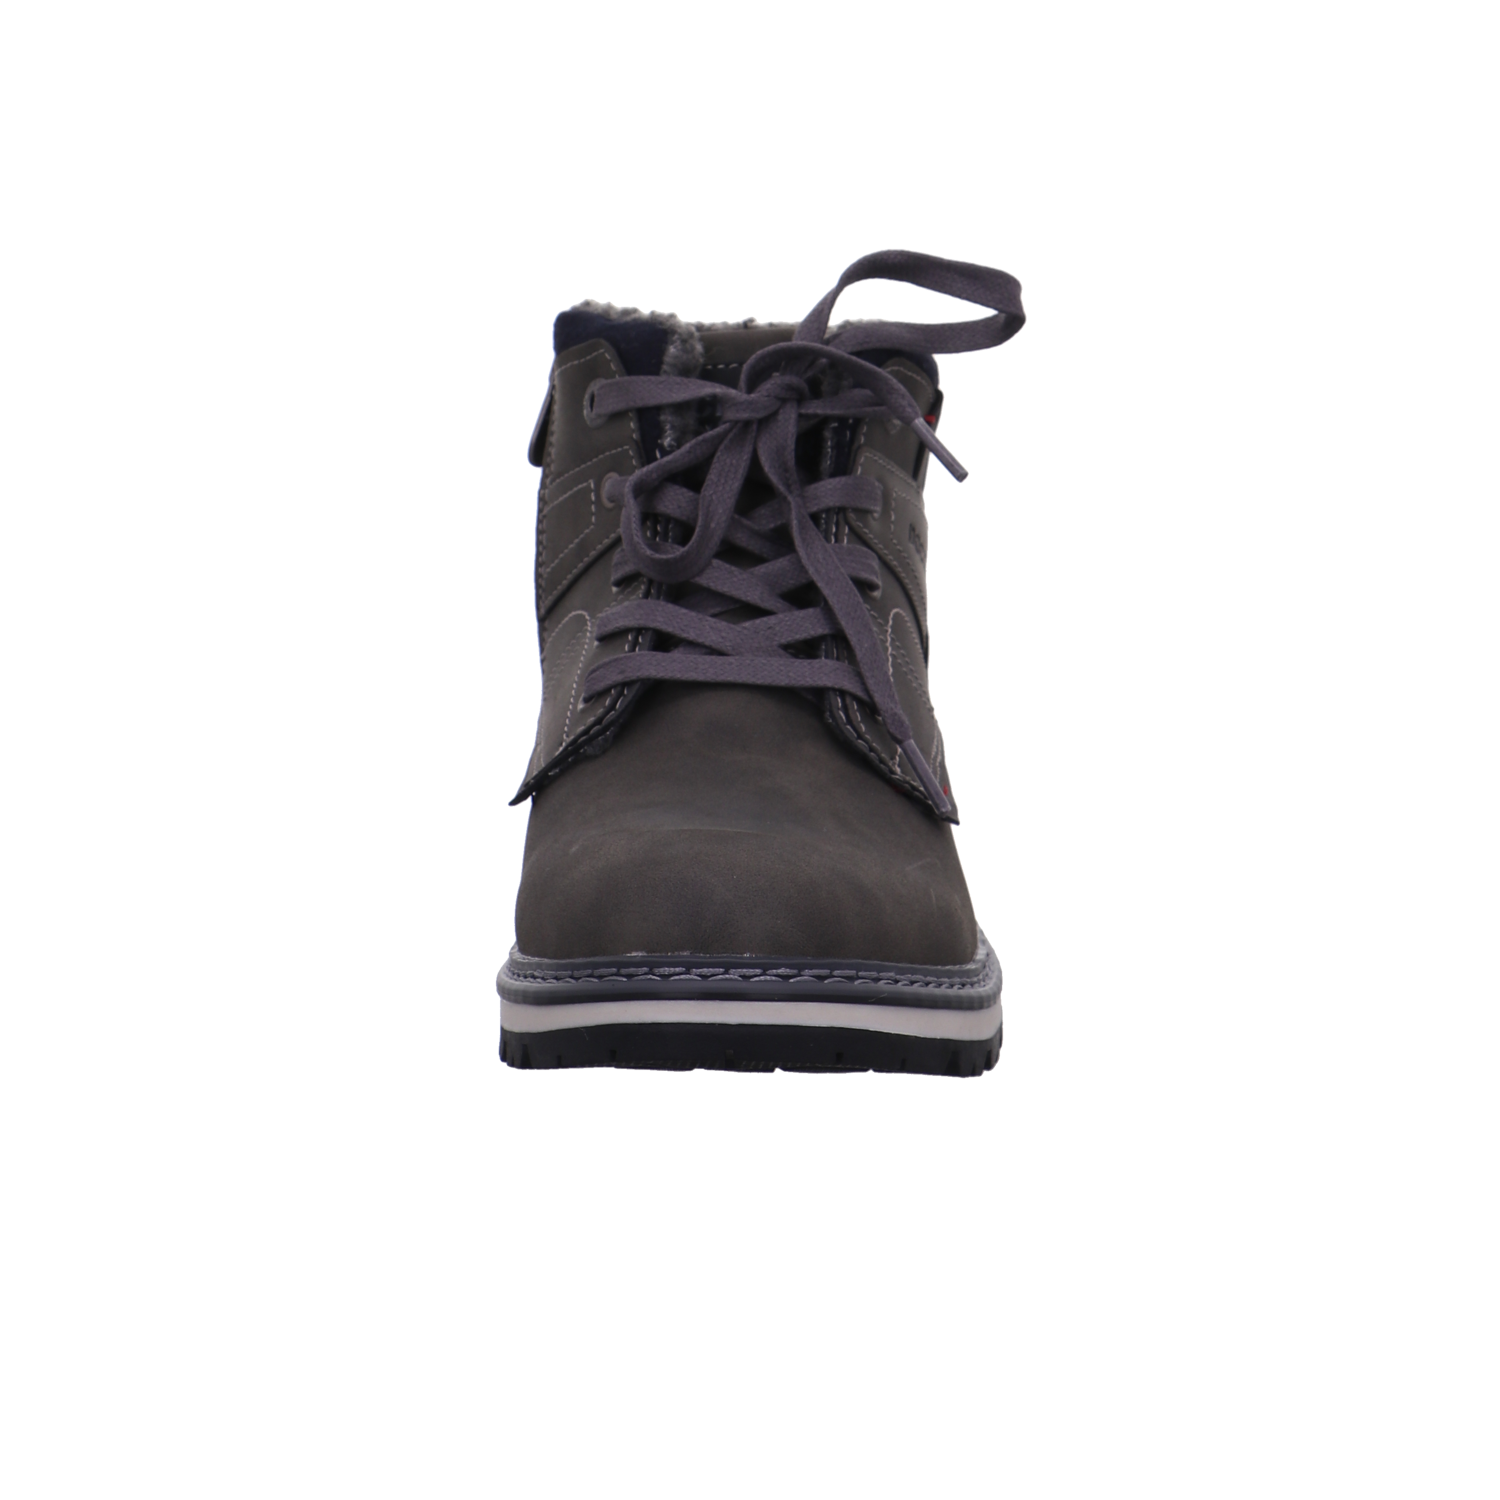 Dockers Boots & Stiefel  dunkel-grau Bild3